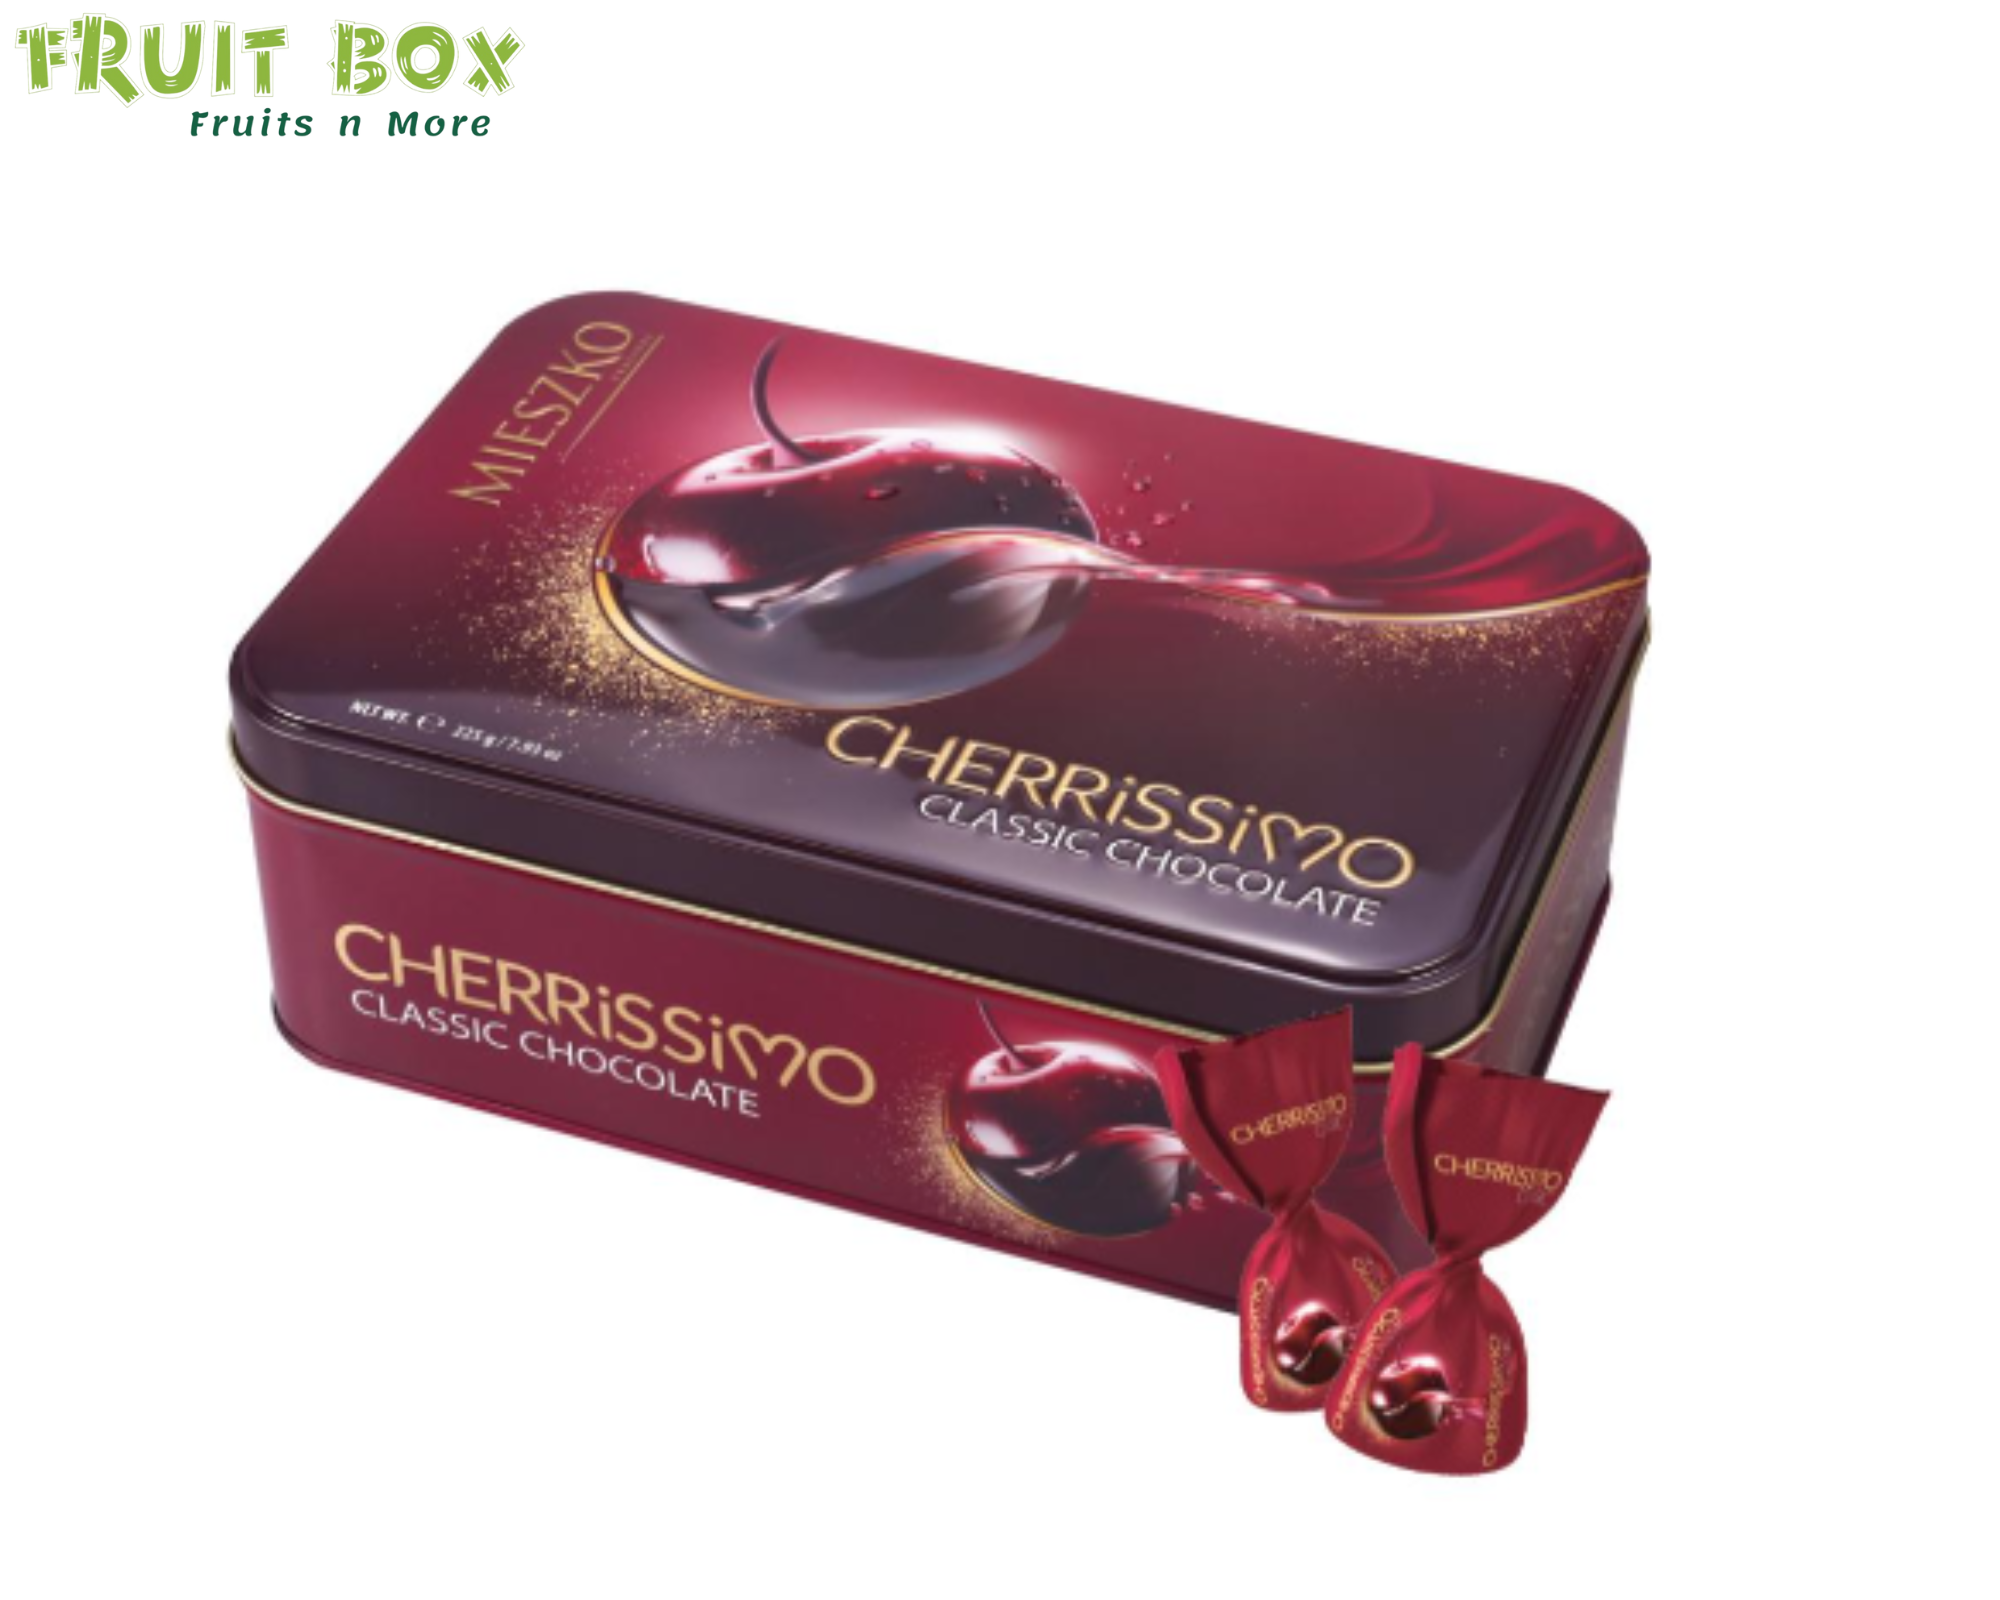 CHERRISSIMO CLASSIC CHOCOLATE